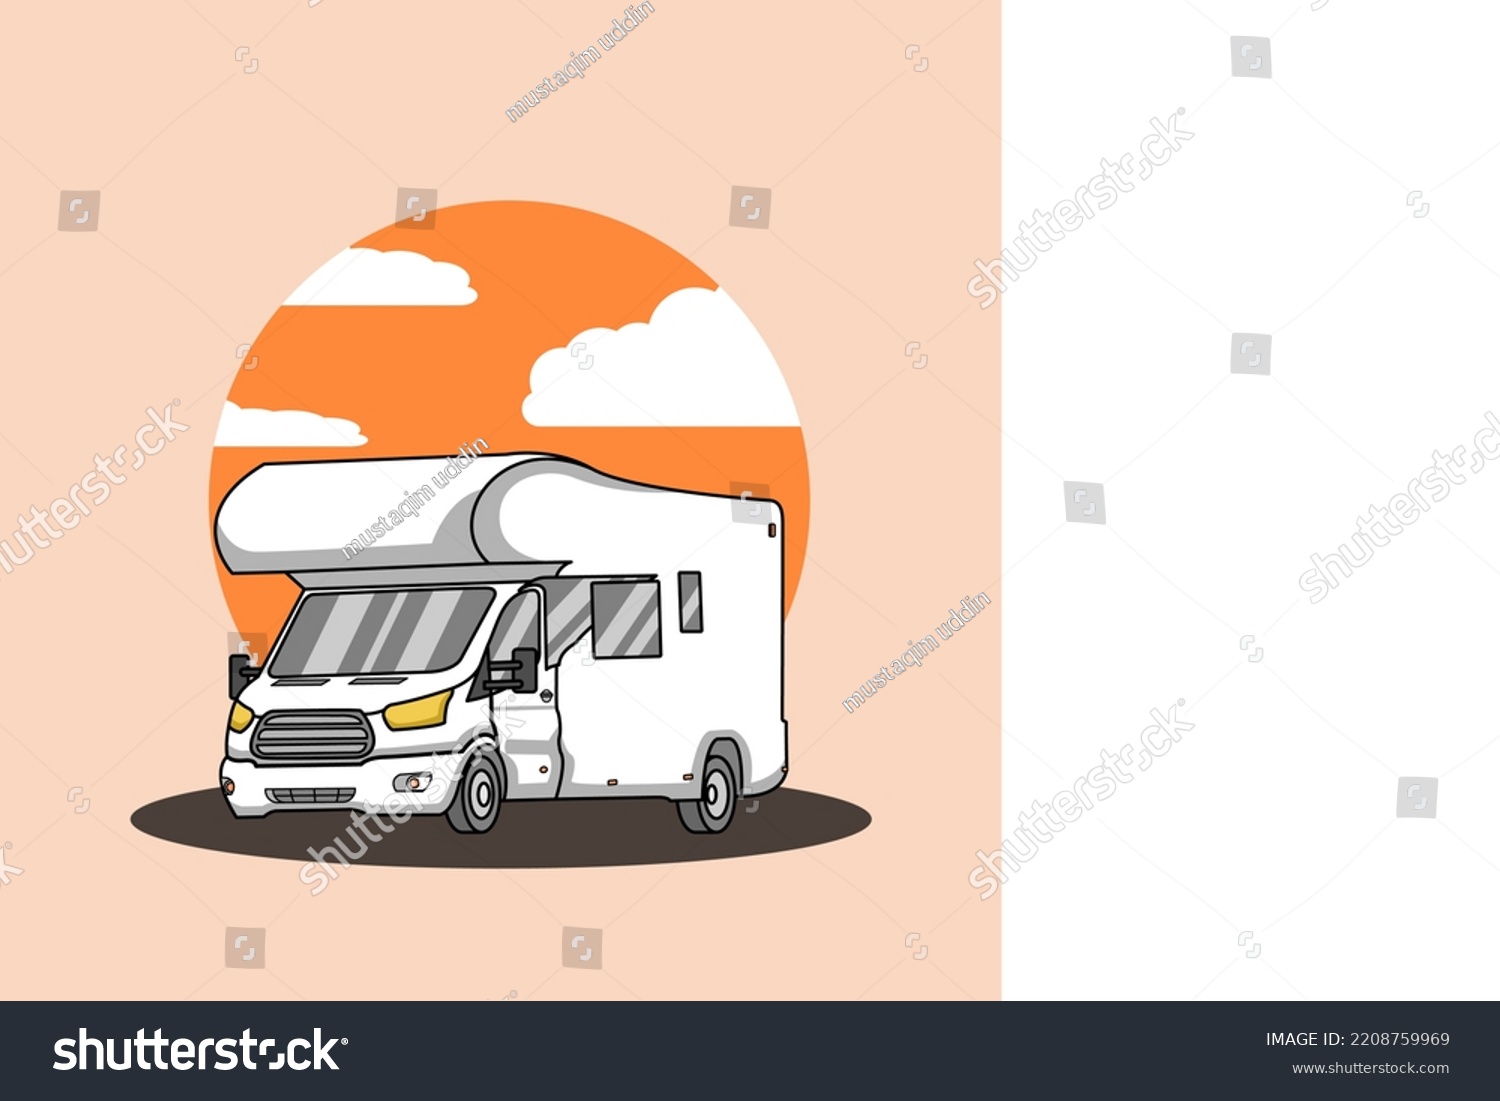 SVG of camping car camper van  white with pop up tent illustration logo vector svg